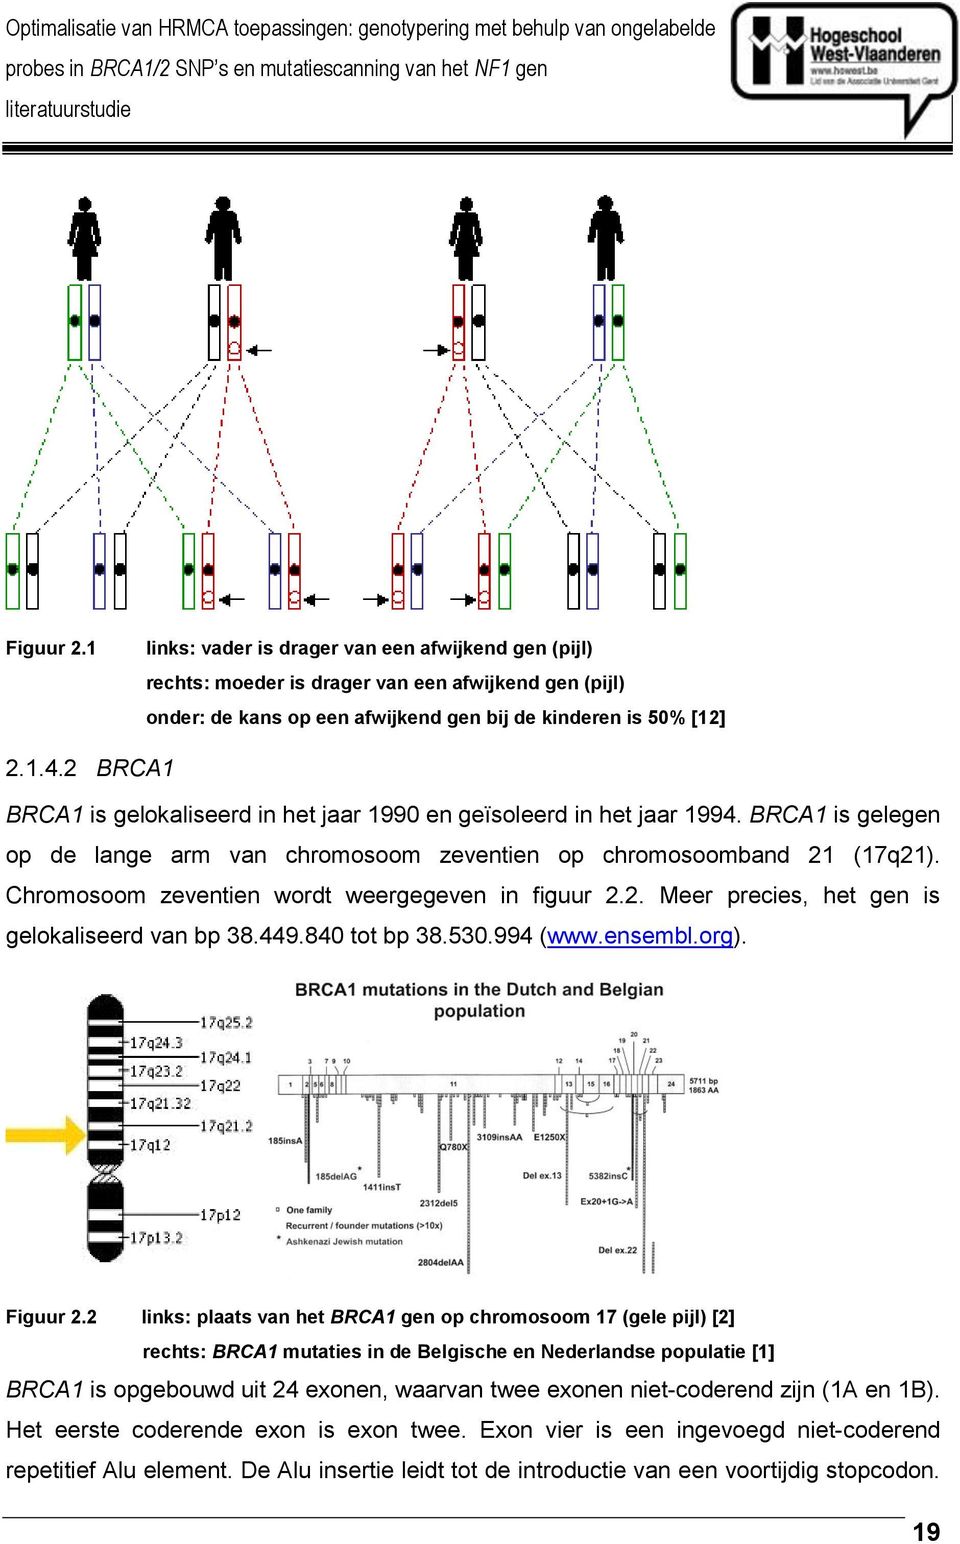 Chromosoom zeventien wordt weergegeven in figuur 2.2. Meer precies, het gen is gelokaliseerd van bp 38.449.840 tot bp 38.530.994 (www.ensembl.org). Figuur 2.